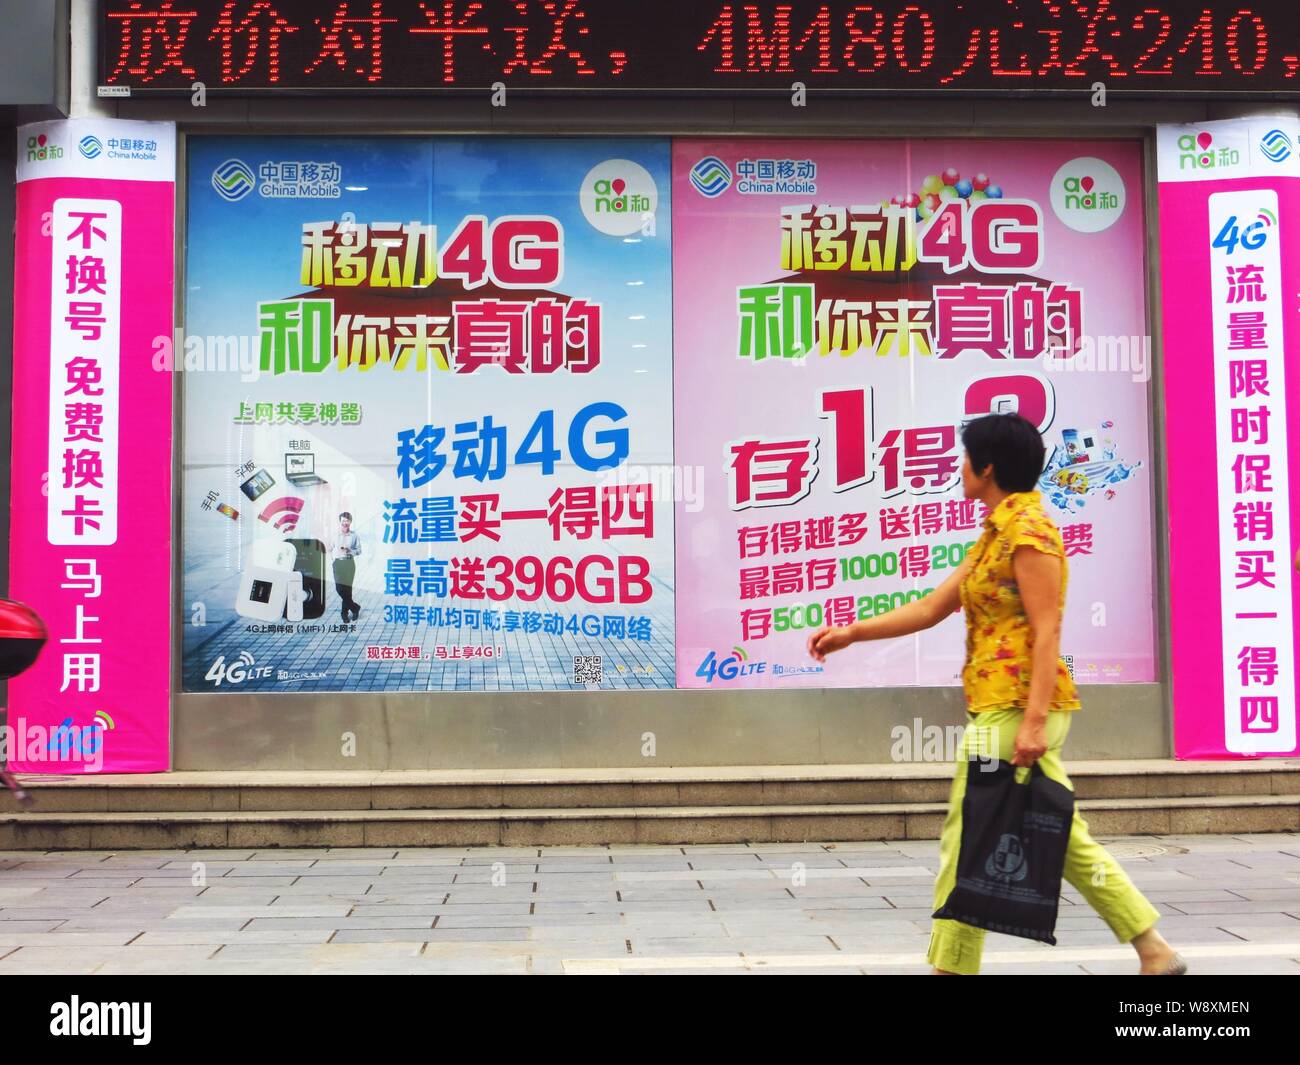 --FILE--un piéton marche dernières publicités pour les réseaux 4G LTE de China Mobile dans la ville de Yichang, province de Hubei, Chine centrale 7 août 2014. Banque D'Images